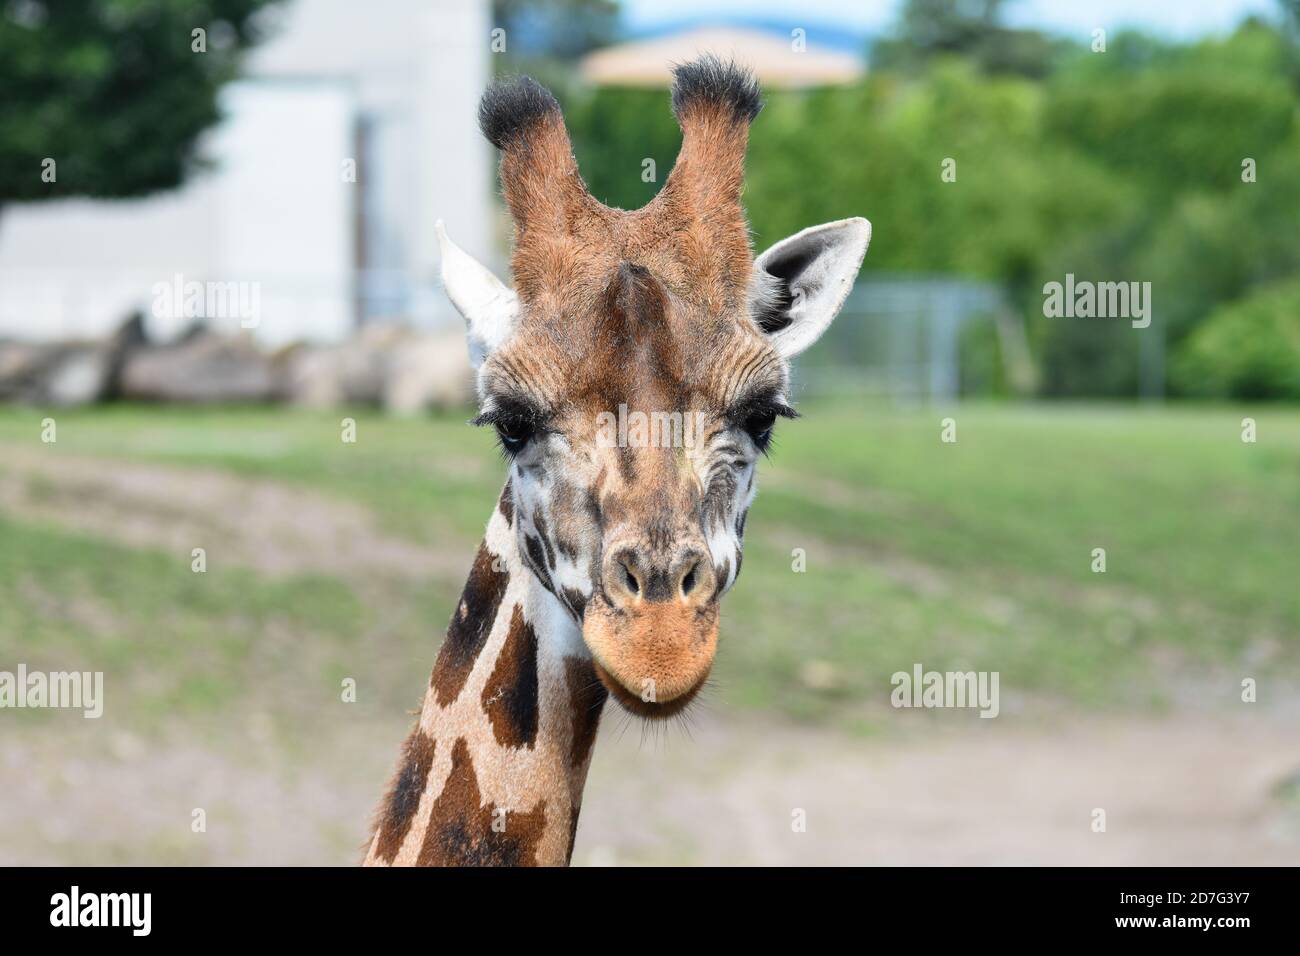 A giraffe in zoo Granby, Granby, Canada Stock Photo